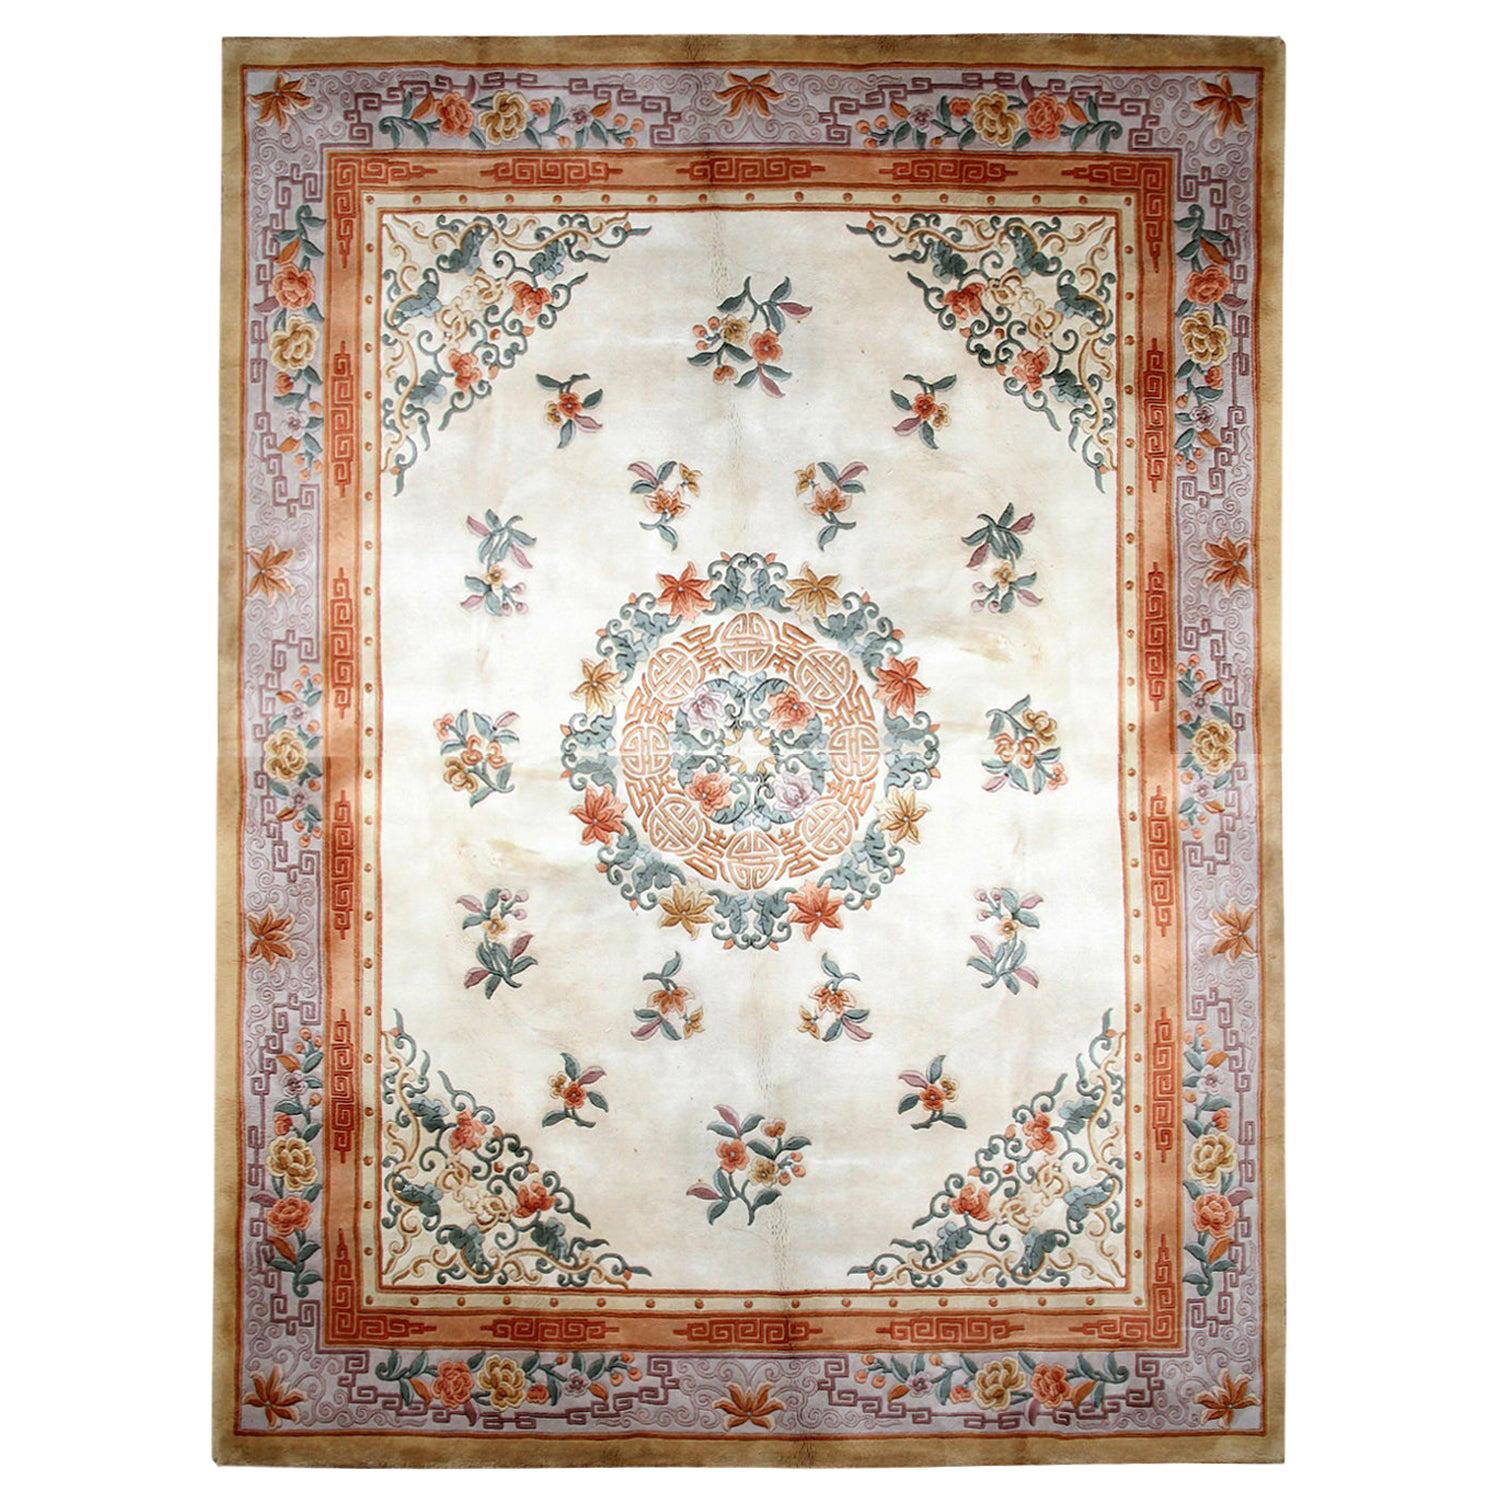 Chinesischer orientalischer Vintage-Teppich im Art-Déco-Stil, handgefertigte cremefarbene Teppiche